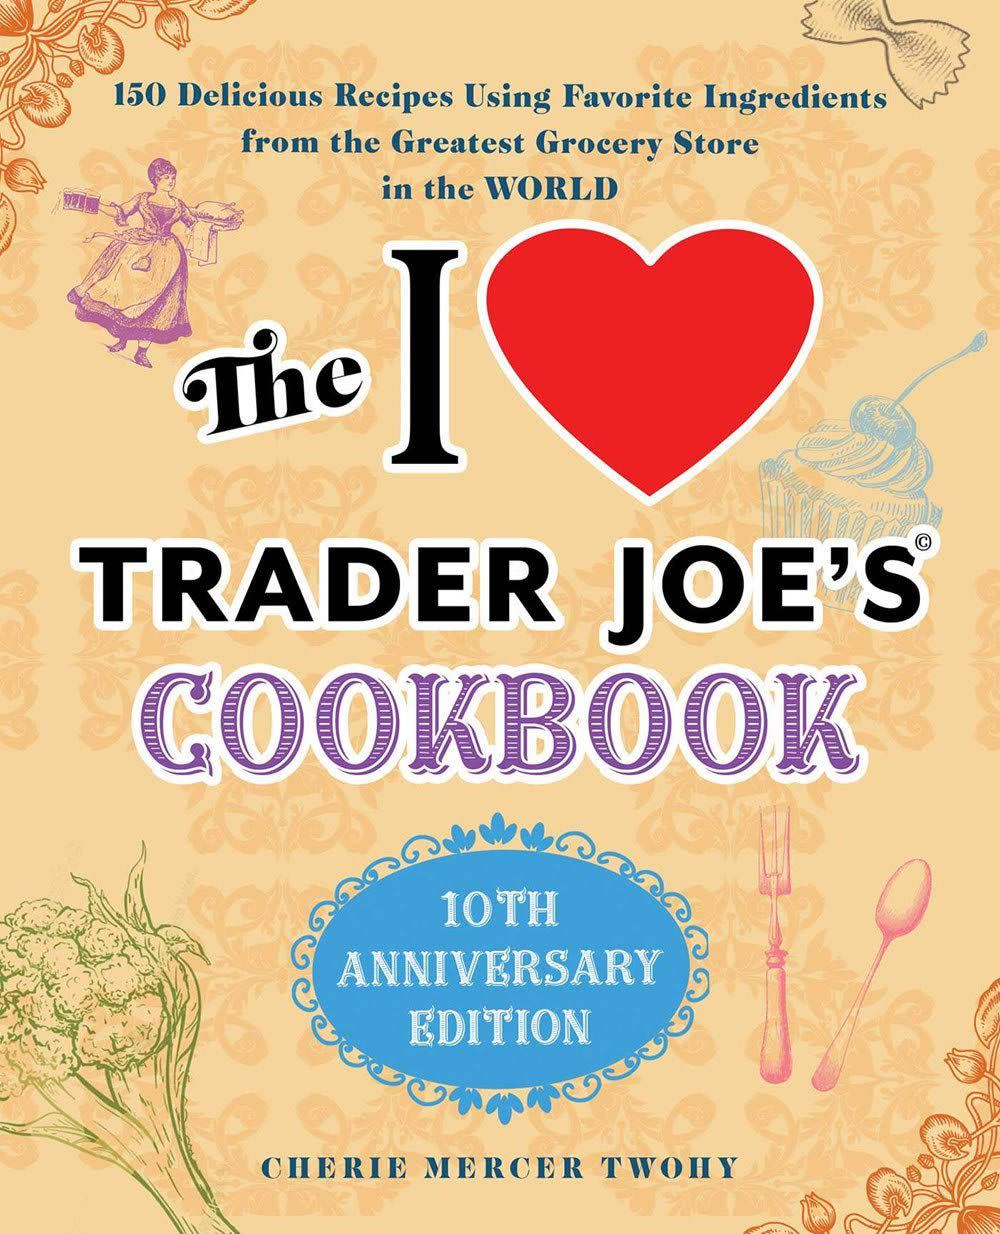 Trader Joe's cookbook